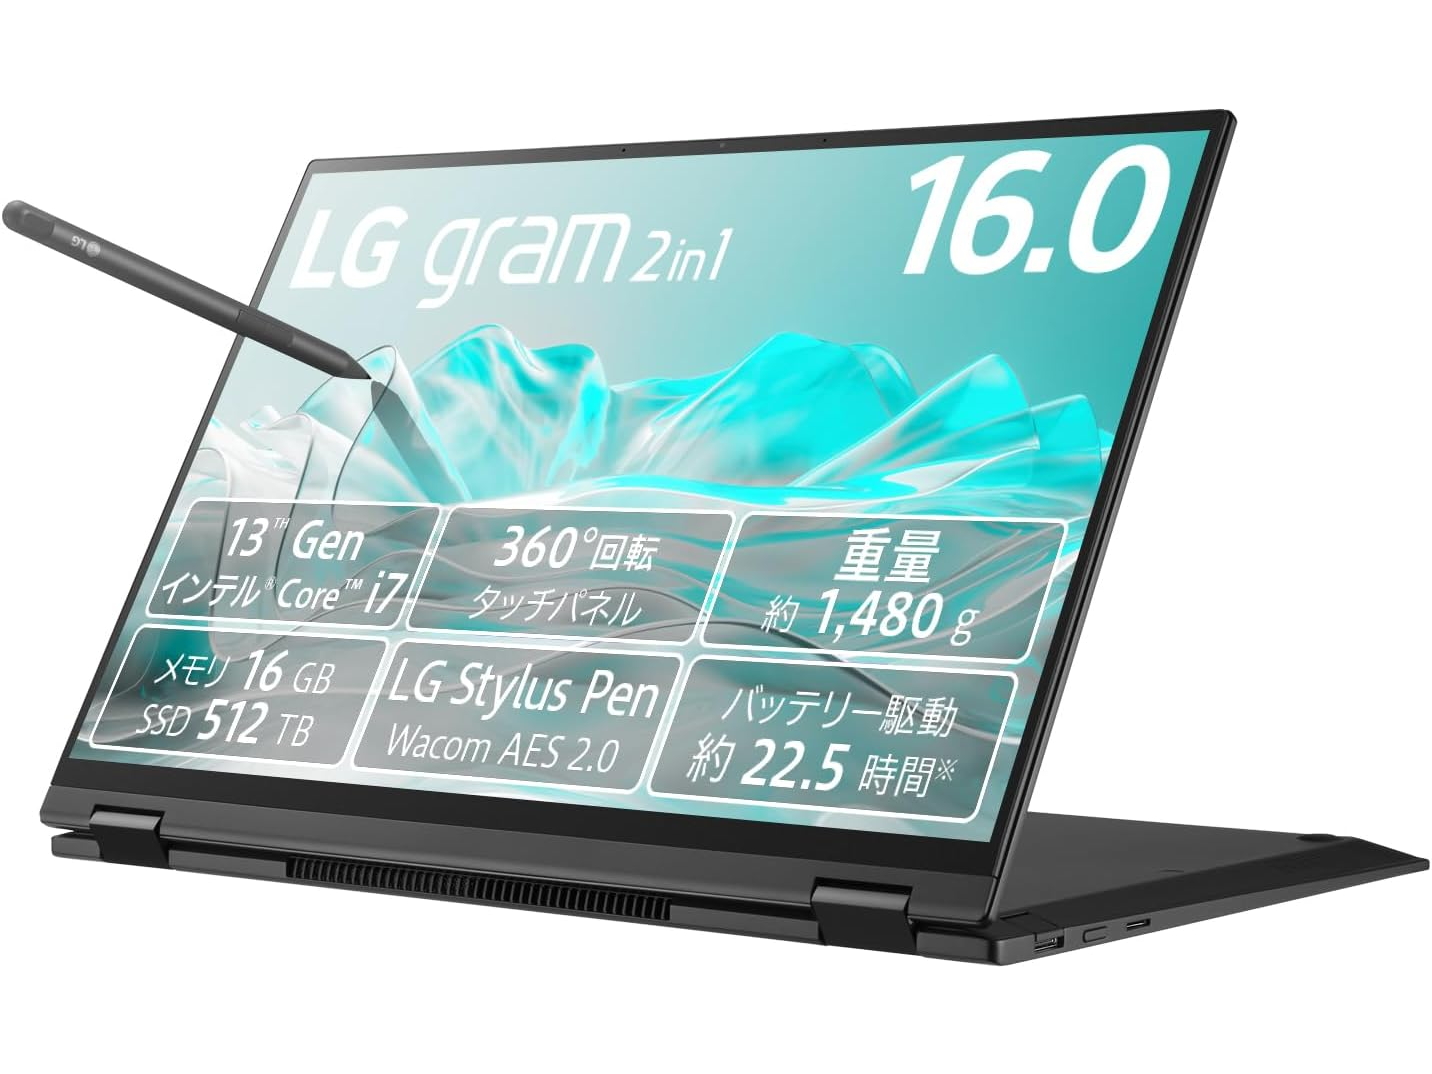 【本日みつけたお買い得品】第13世代Core i7搭載の16型「LG gram 